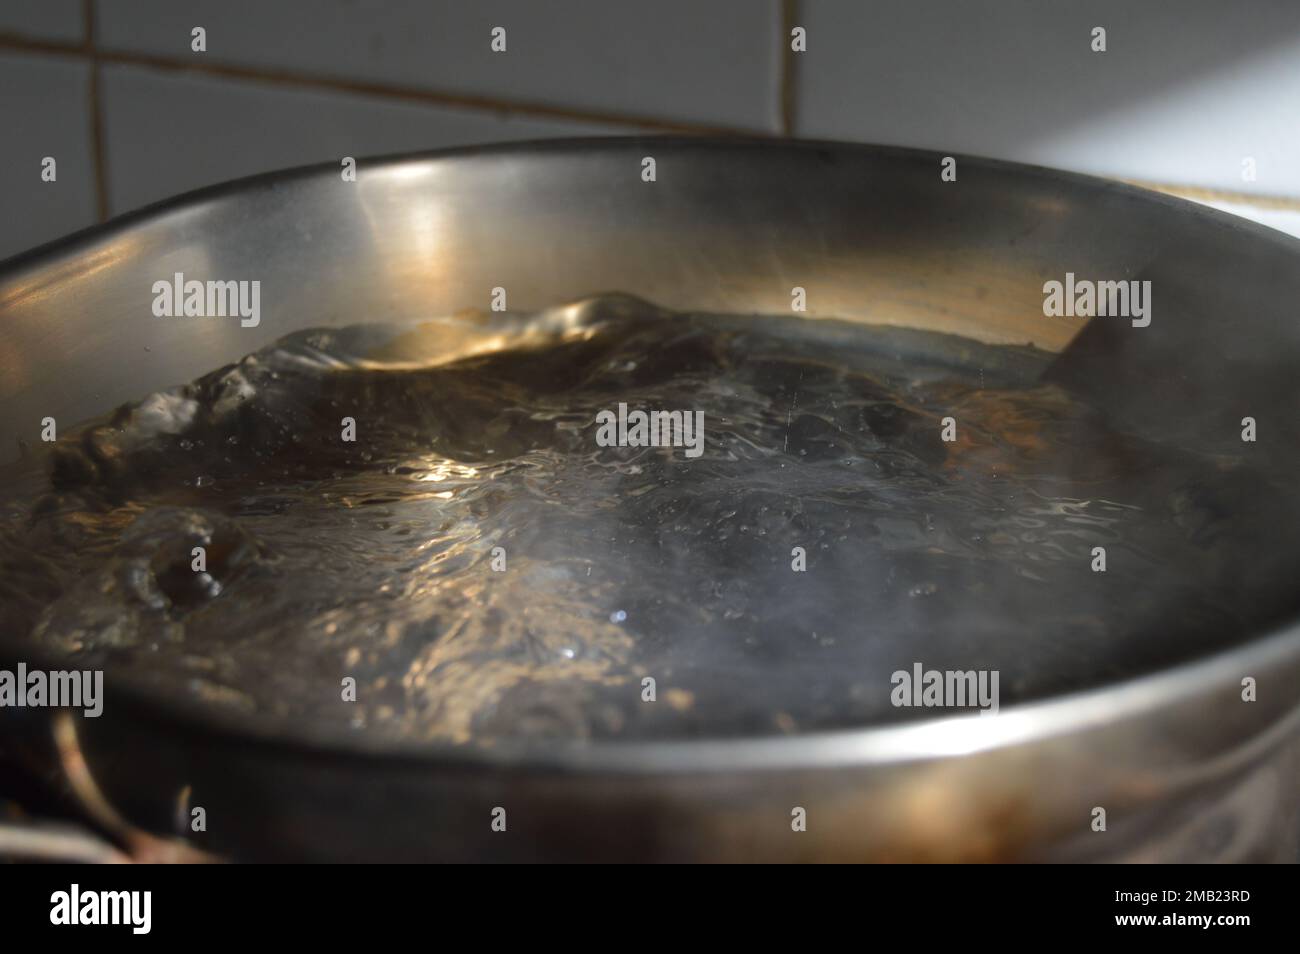 Ritratto di acqua bollente in una pentola bollente. Foto Stock